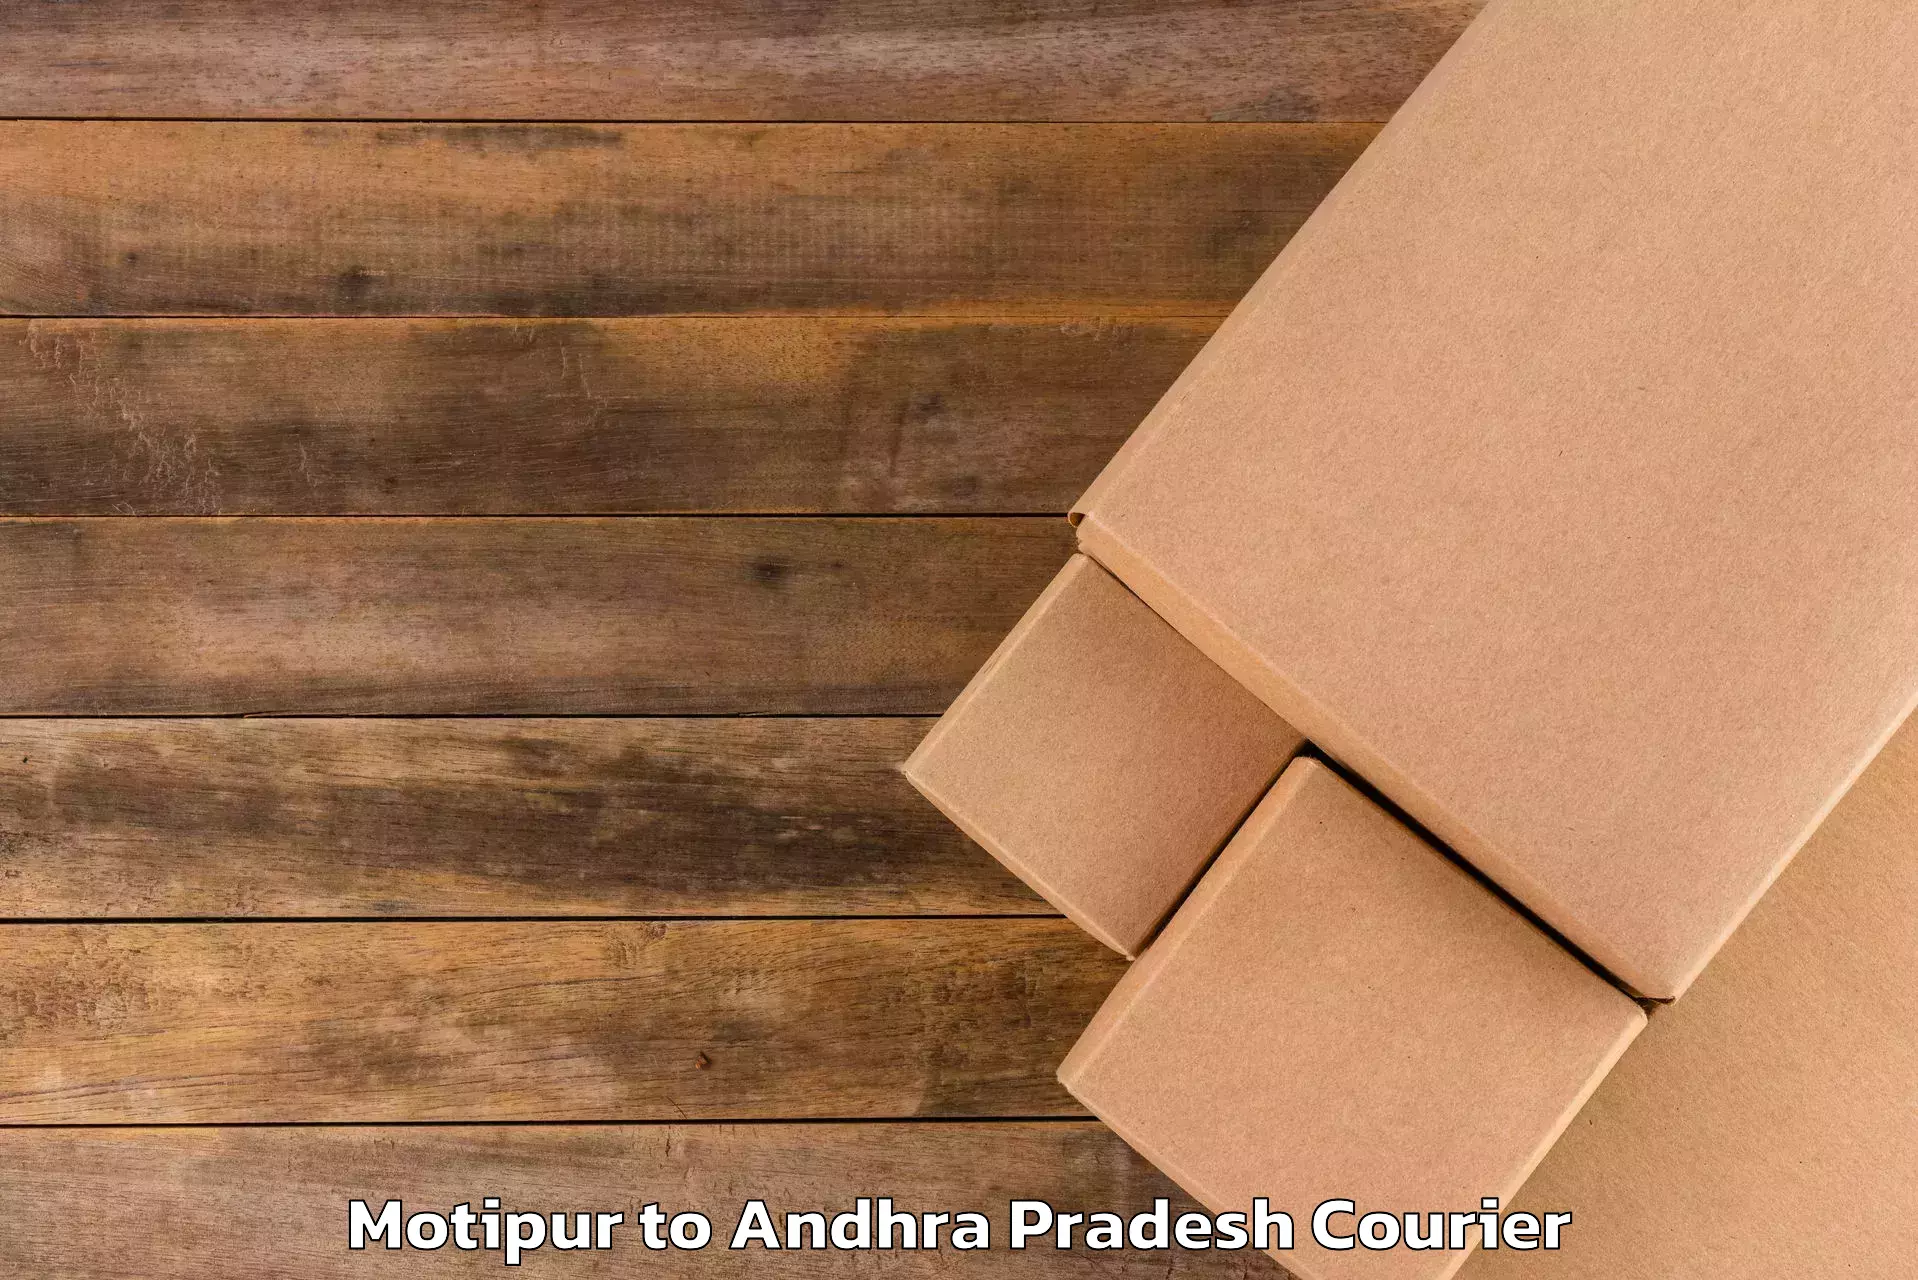 Baggage transport management Motipur to Andhra Pradesh